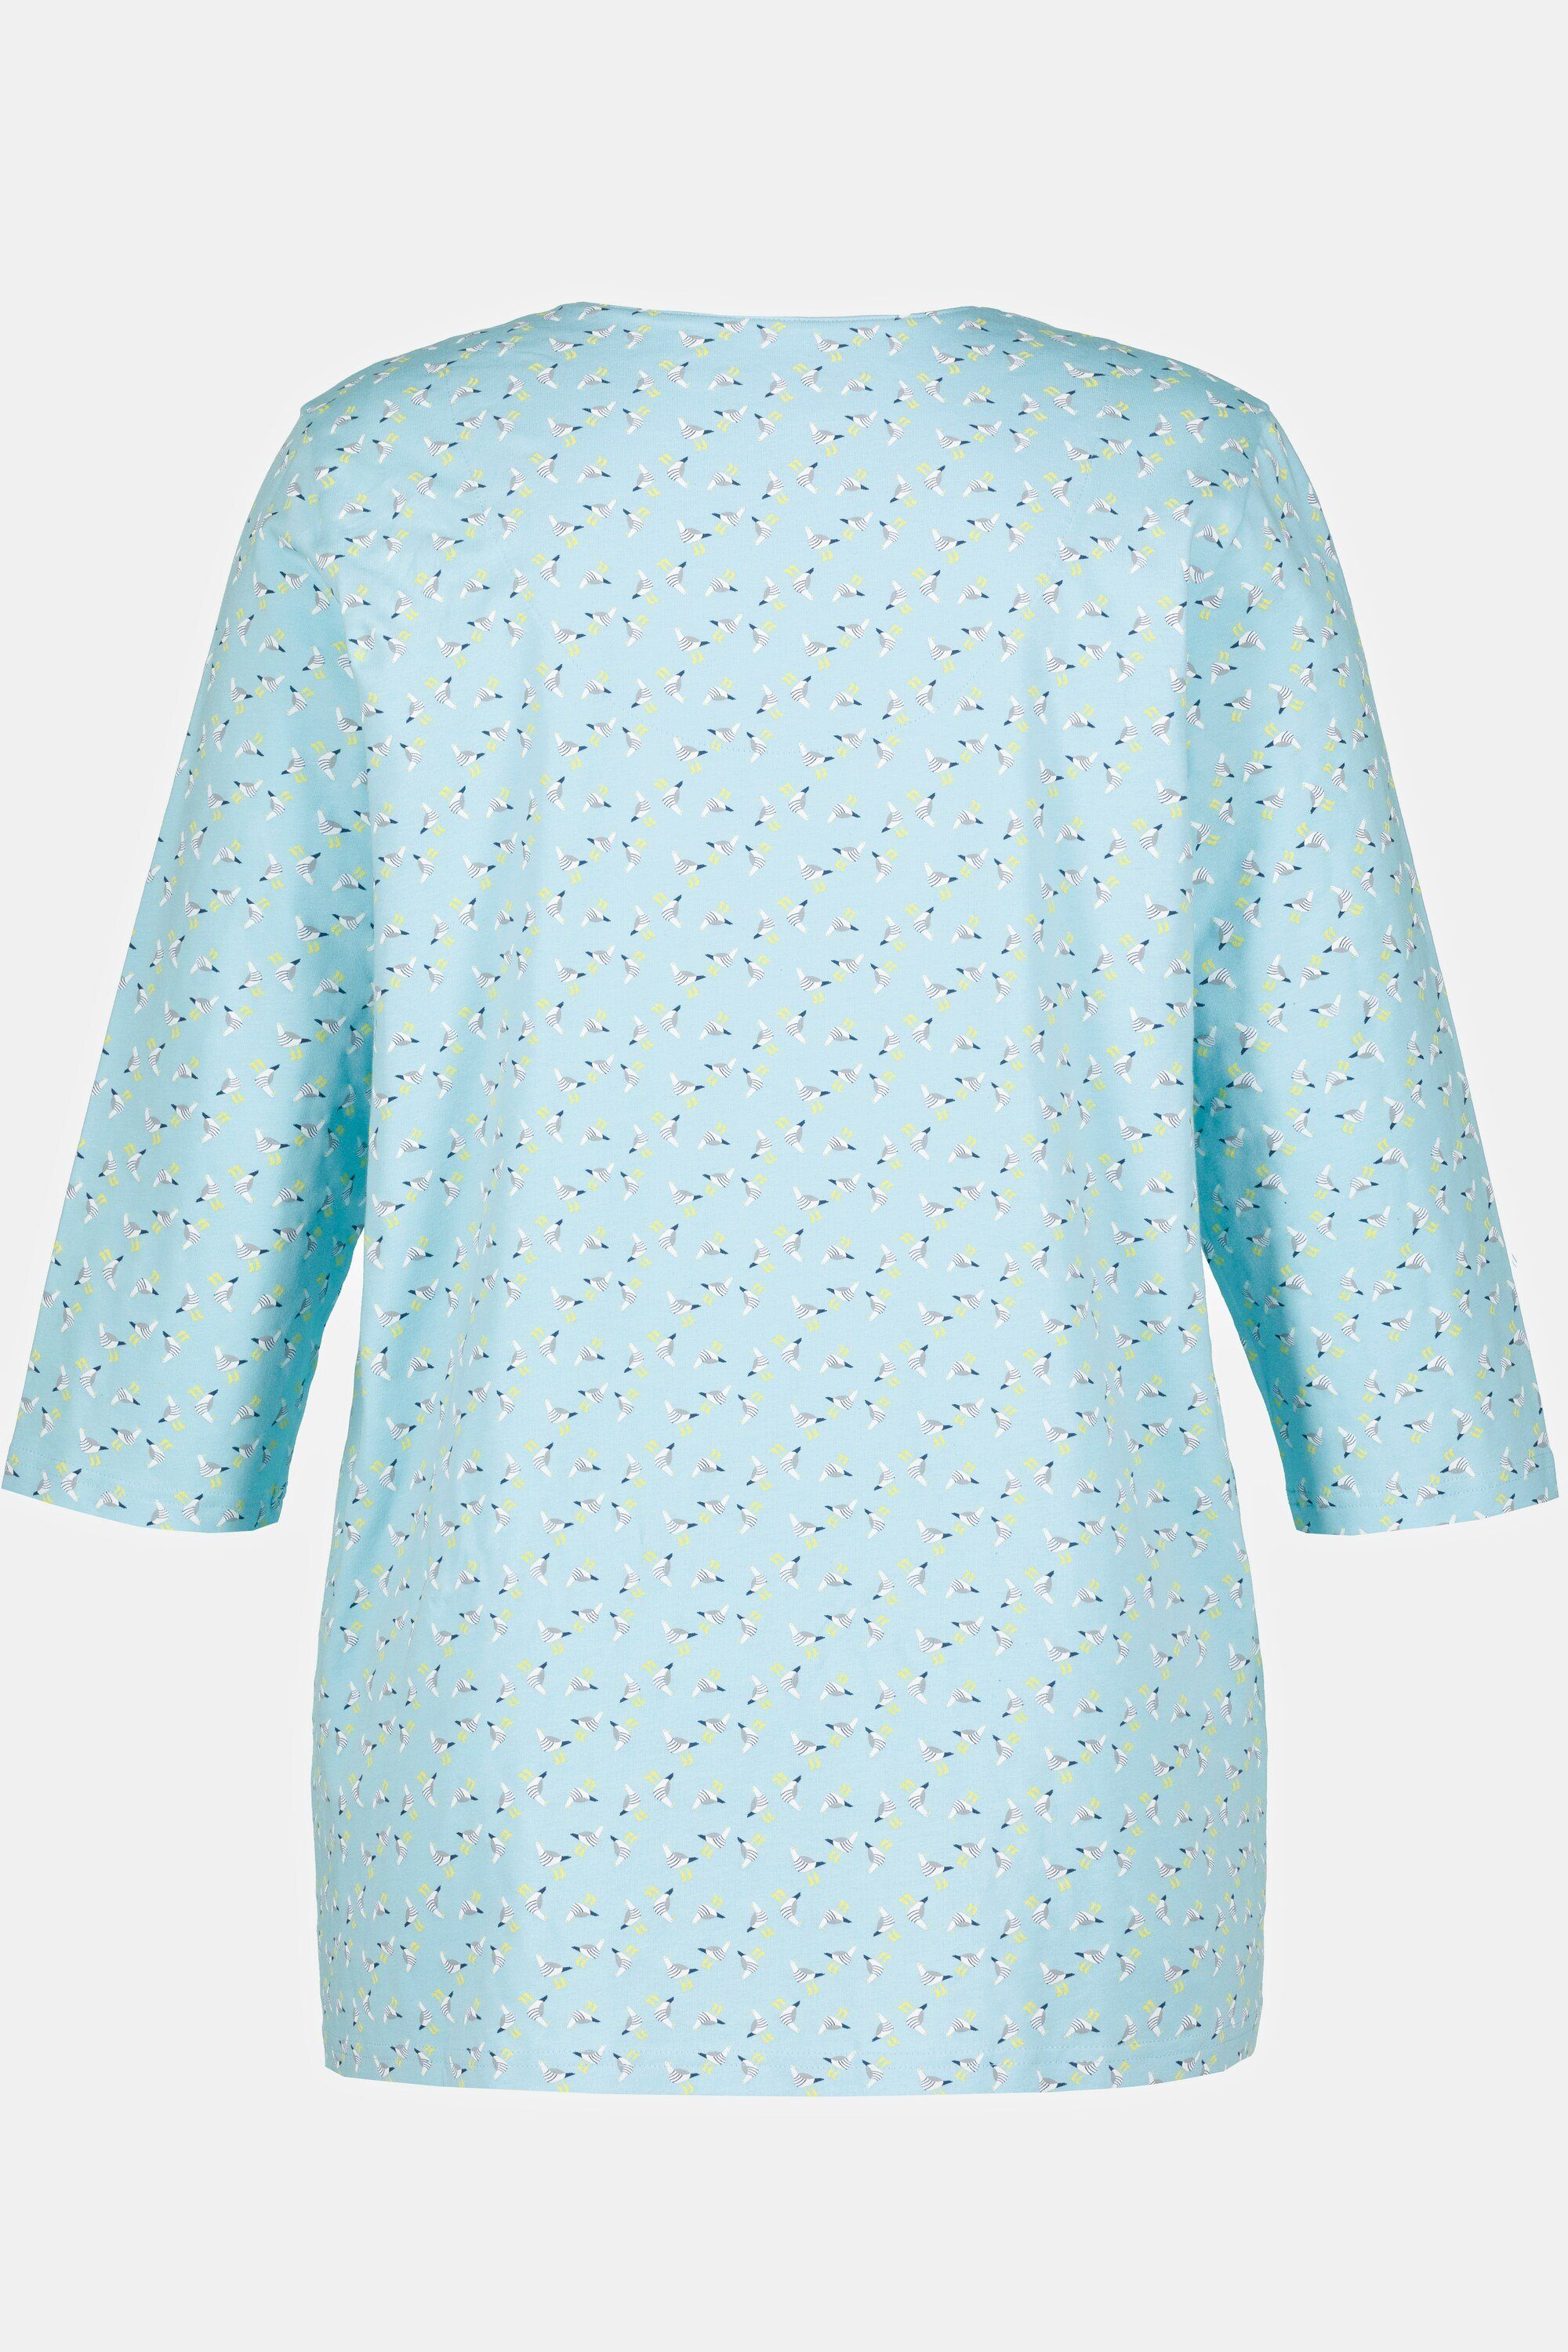 Ulla Popken Rundhalsshirt Shirt A-Linie Tunika-Ausschnitt hellblau Möwen 3/4-Arm